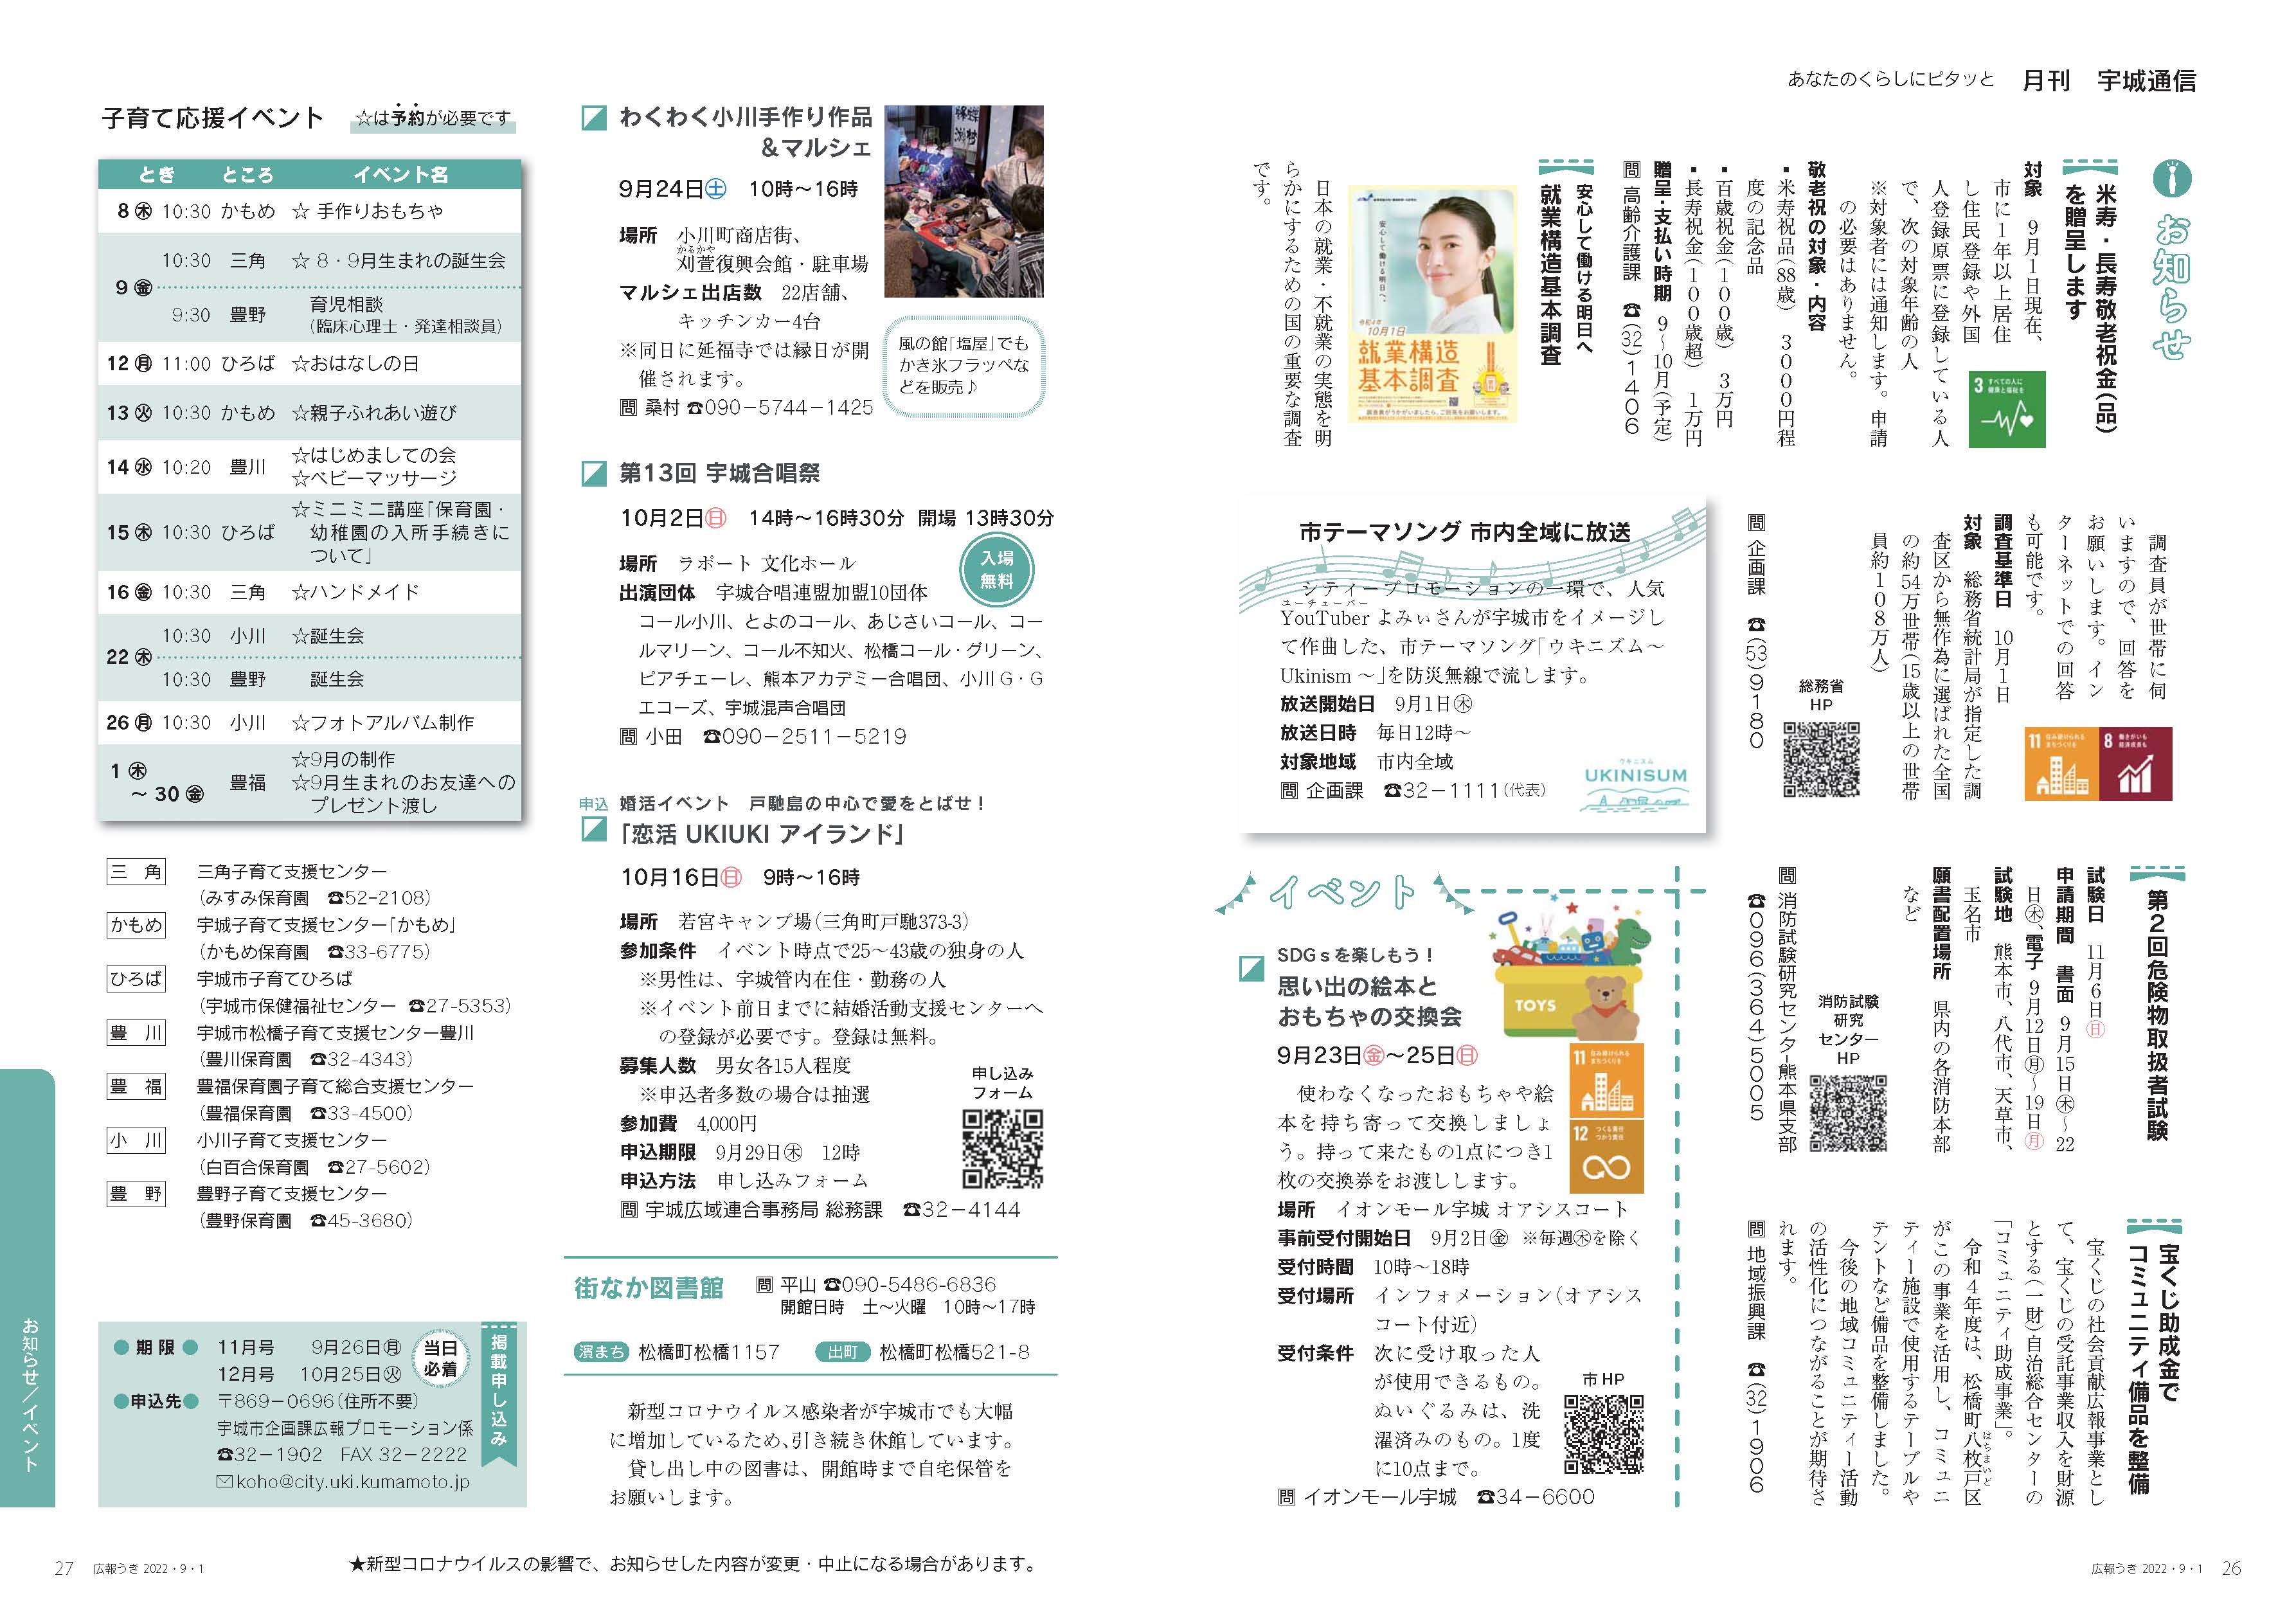 P26、P27　あなたのくらしにピタッと　月刊 宇城通信のページ画像　詳細はPDFリンクを参照ください。